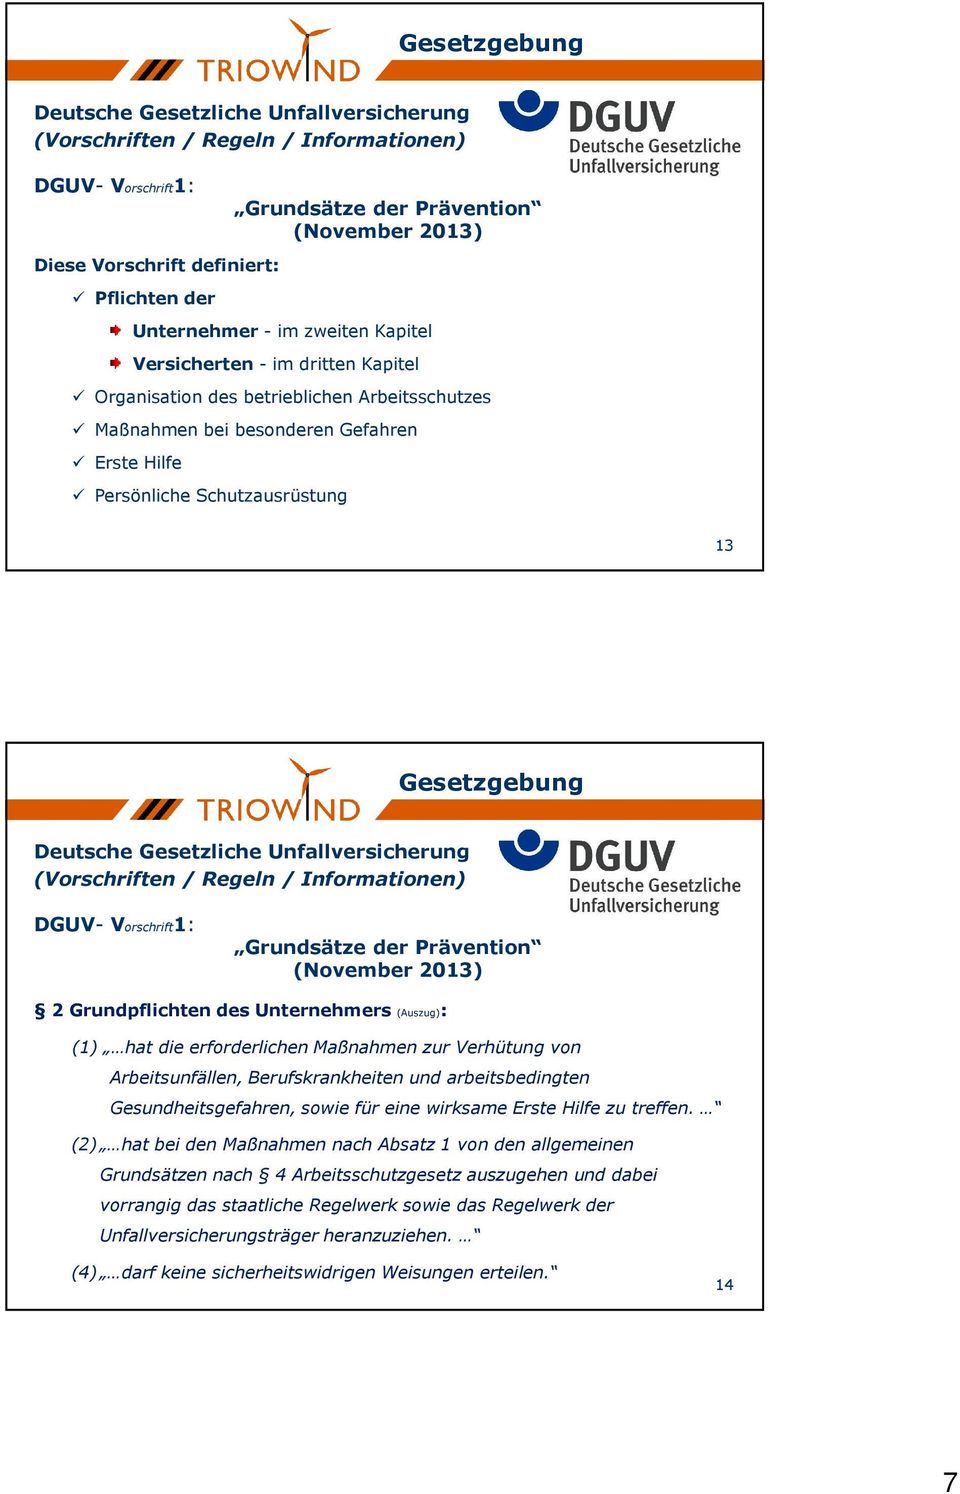 Gesetzgebung Deutsche Gesetzliche Unfallversicherung (Vorschriften / Regeln / Informationen) DGUV- Vorschrift1: Grundsätze der Prävention (November 2013) 2 Grundpflichten des Unternehmers (Auszug):